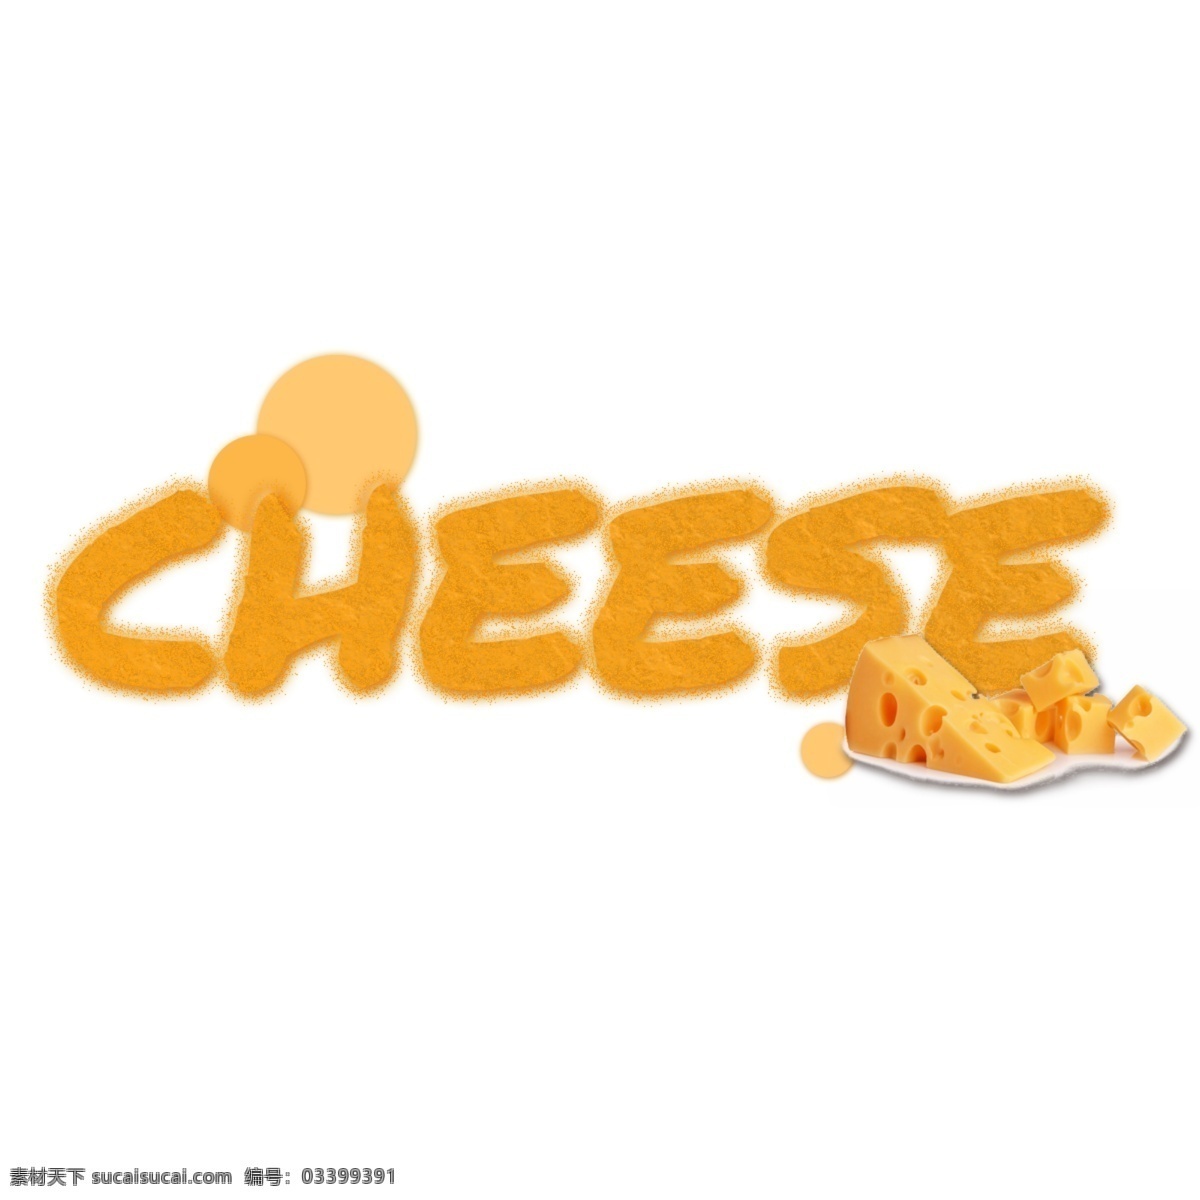 黄色 切片 乳酪 小点 艺术 词 起司 切片的奶酪 一盘奶酪 面包奶酪 美味的奶酪 黄色奶酪 字形 字体设计 书法 餐厅